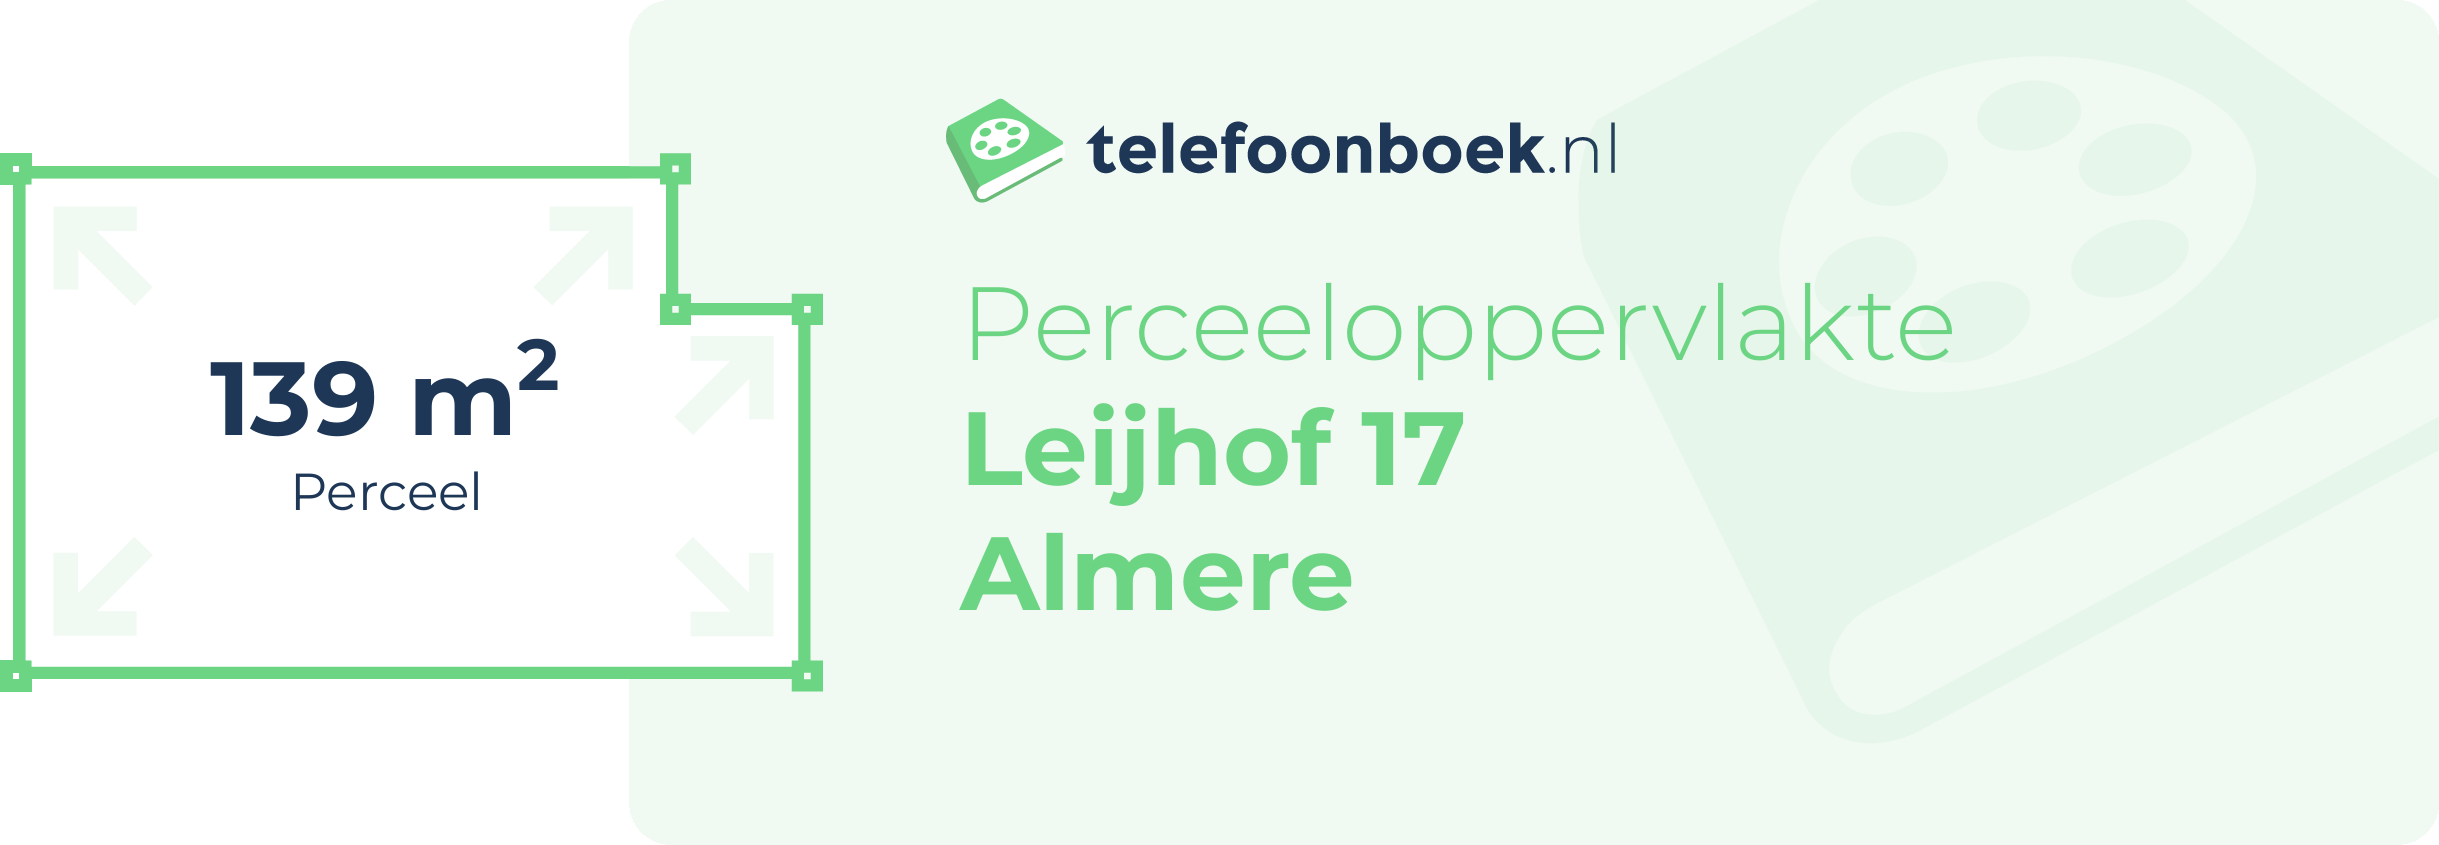 Perceeloppervlakte Leijhof 17 Almere